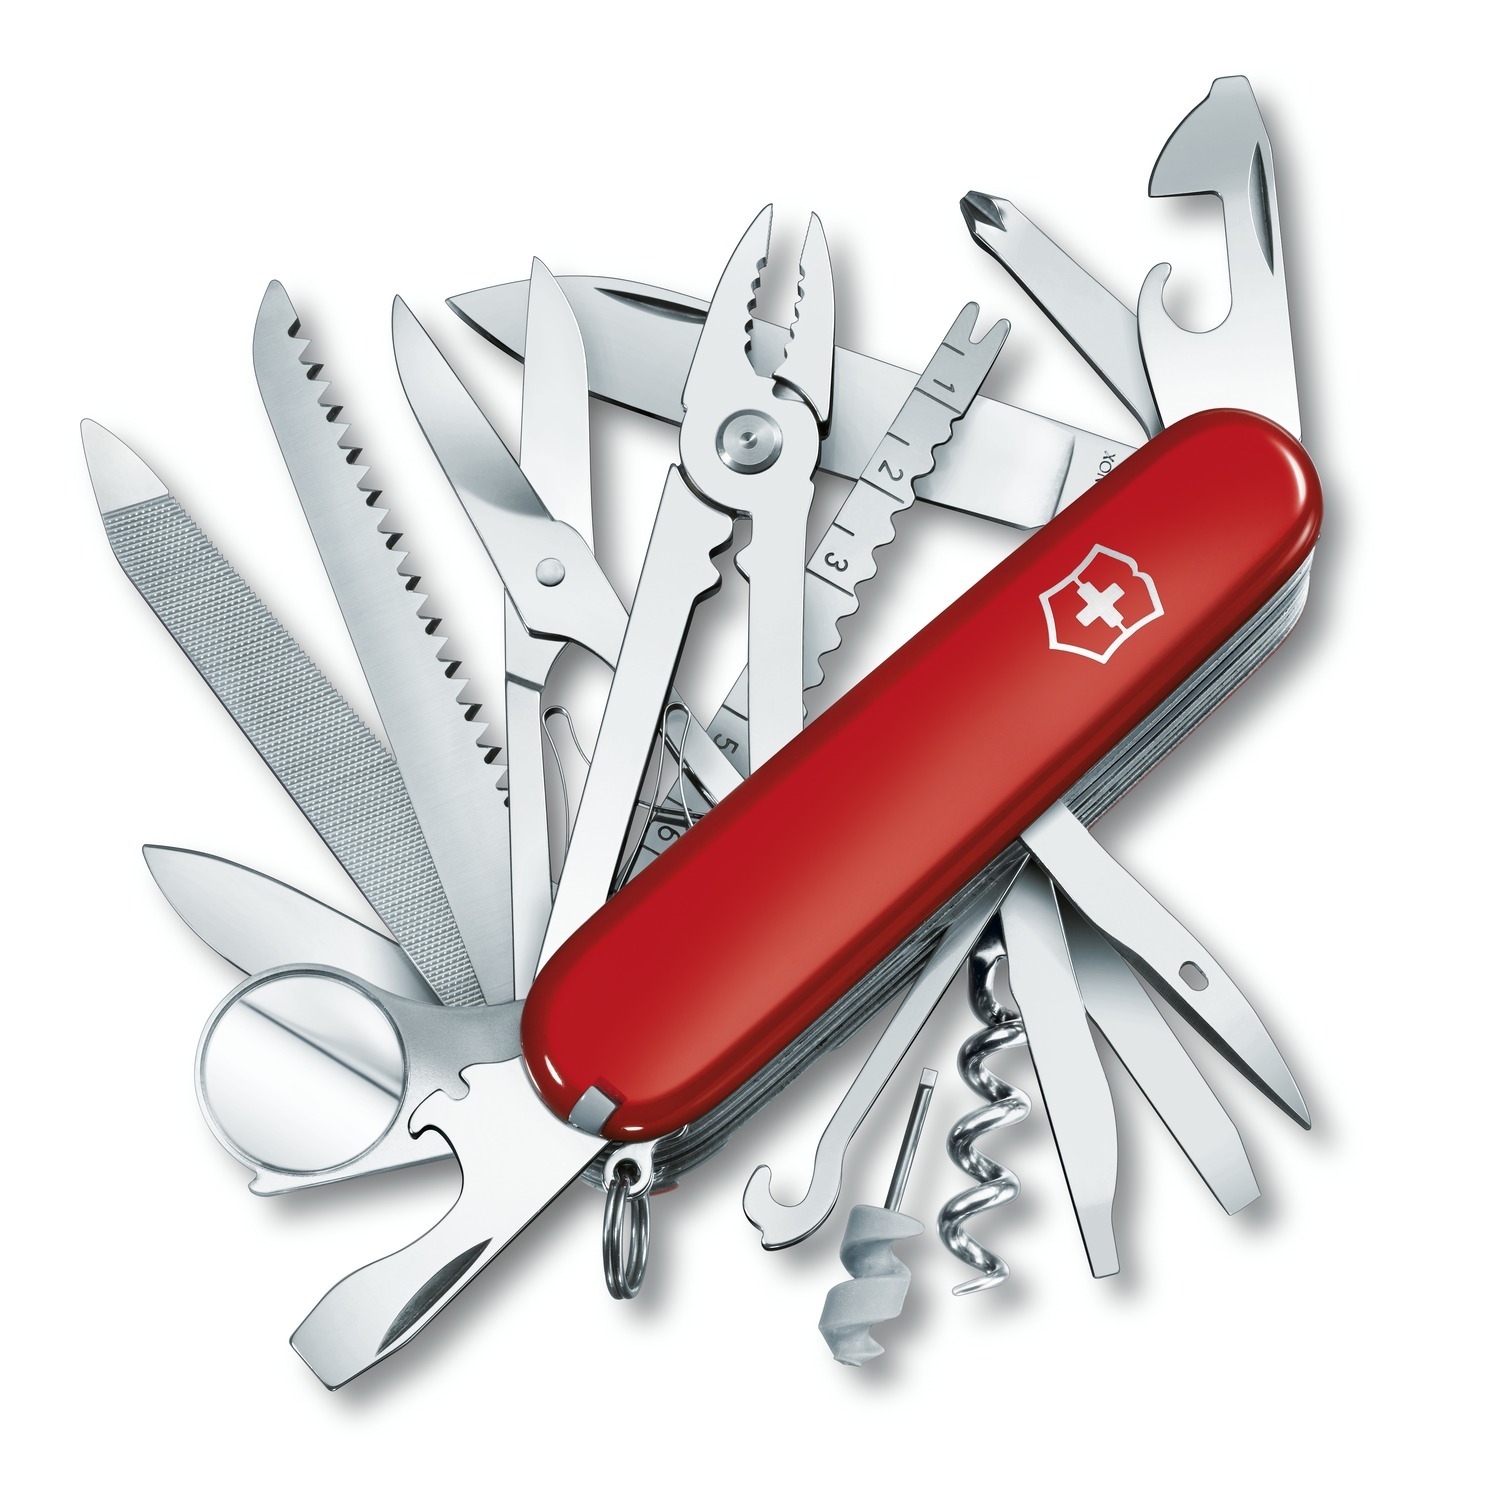 Нож Victorinox SwissChamp, 91 мм, 33 функции, красный 1.6795 шило канцелярское attache малое эконом 931249